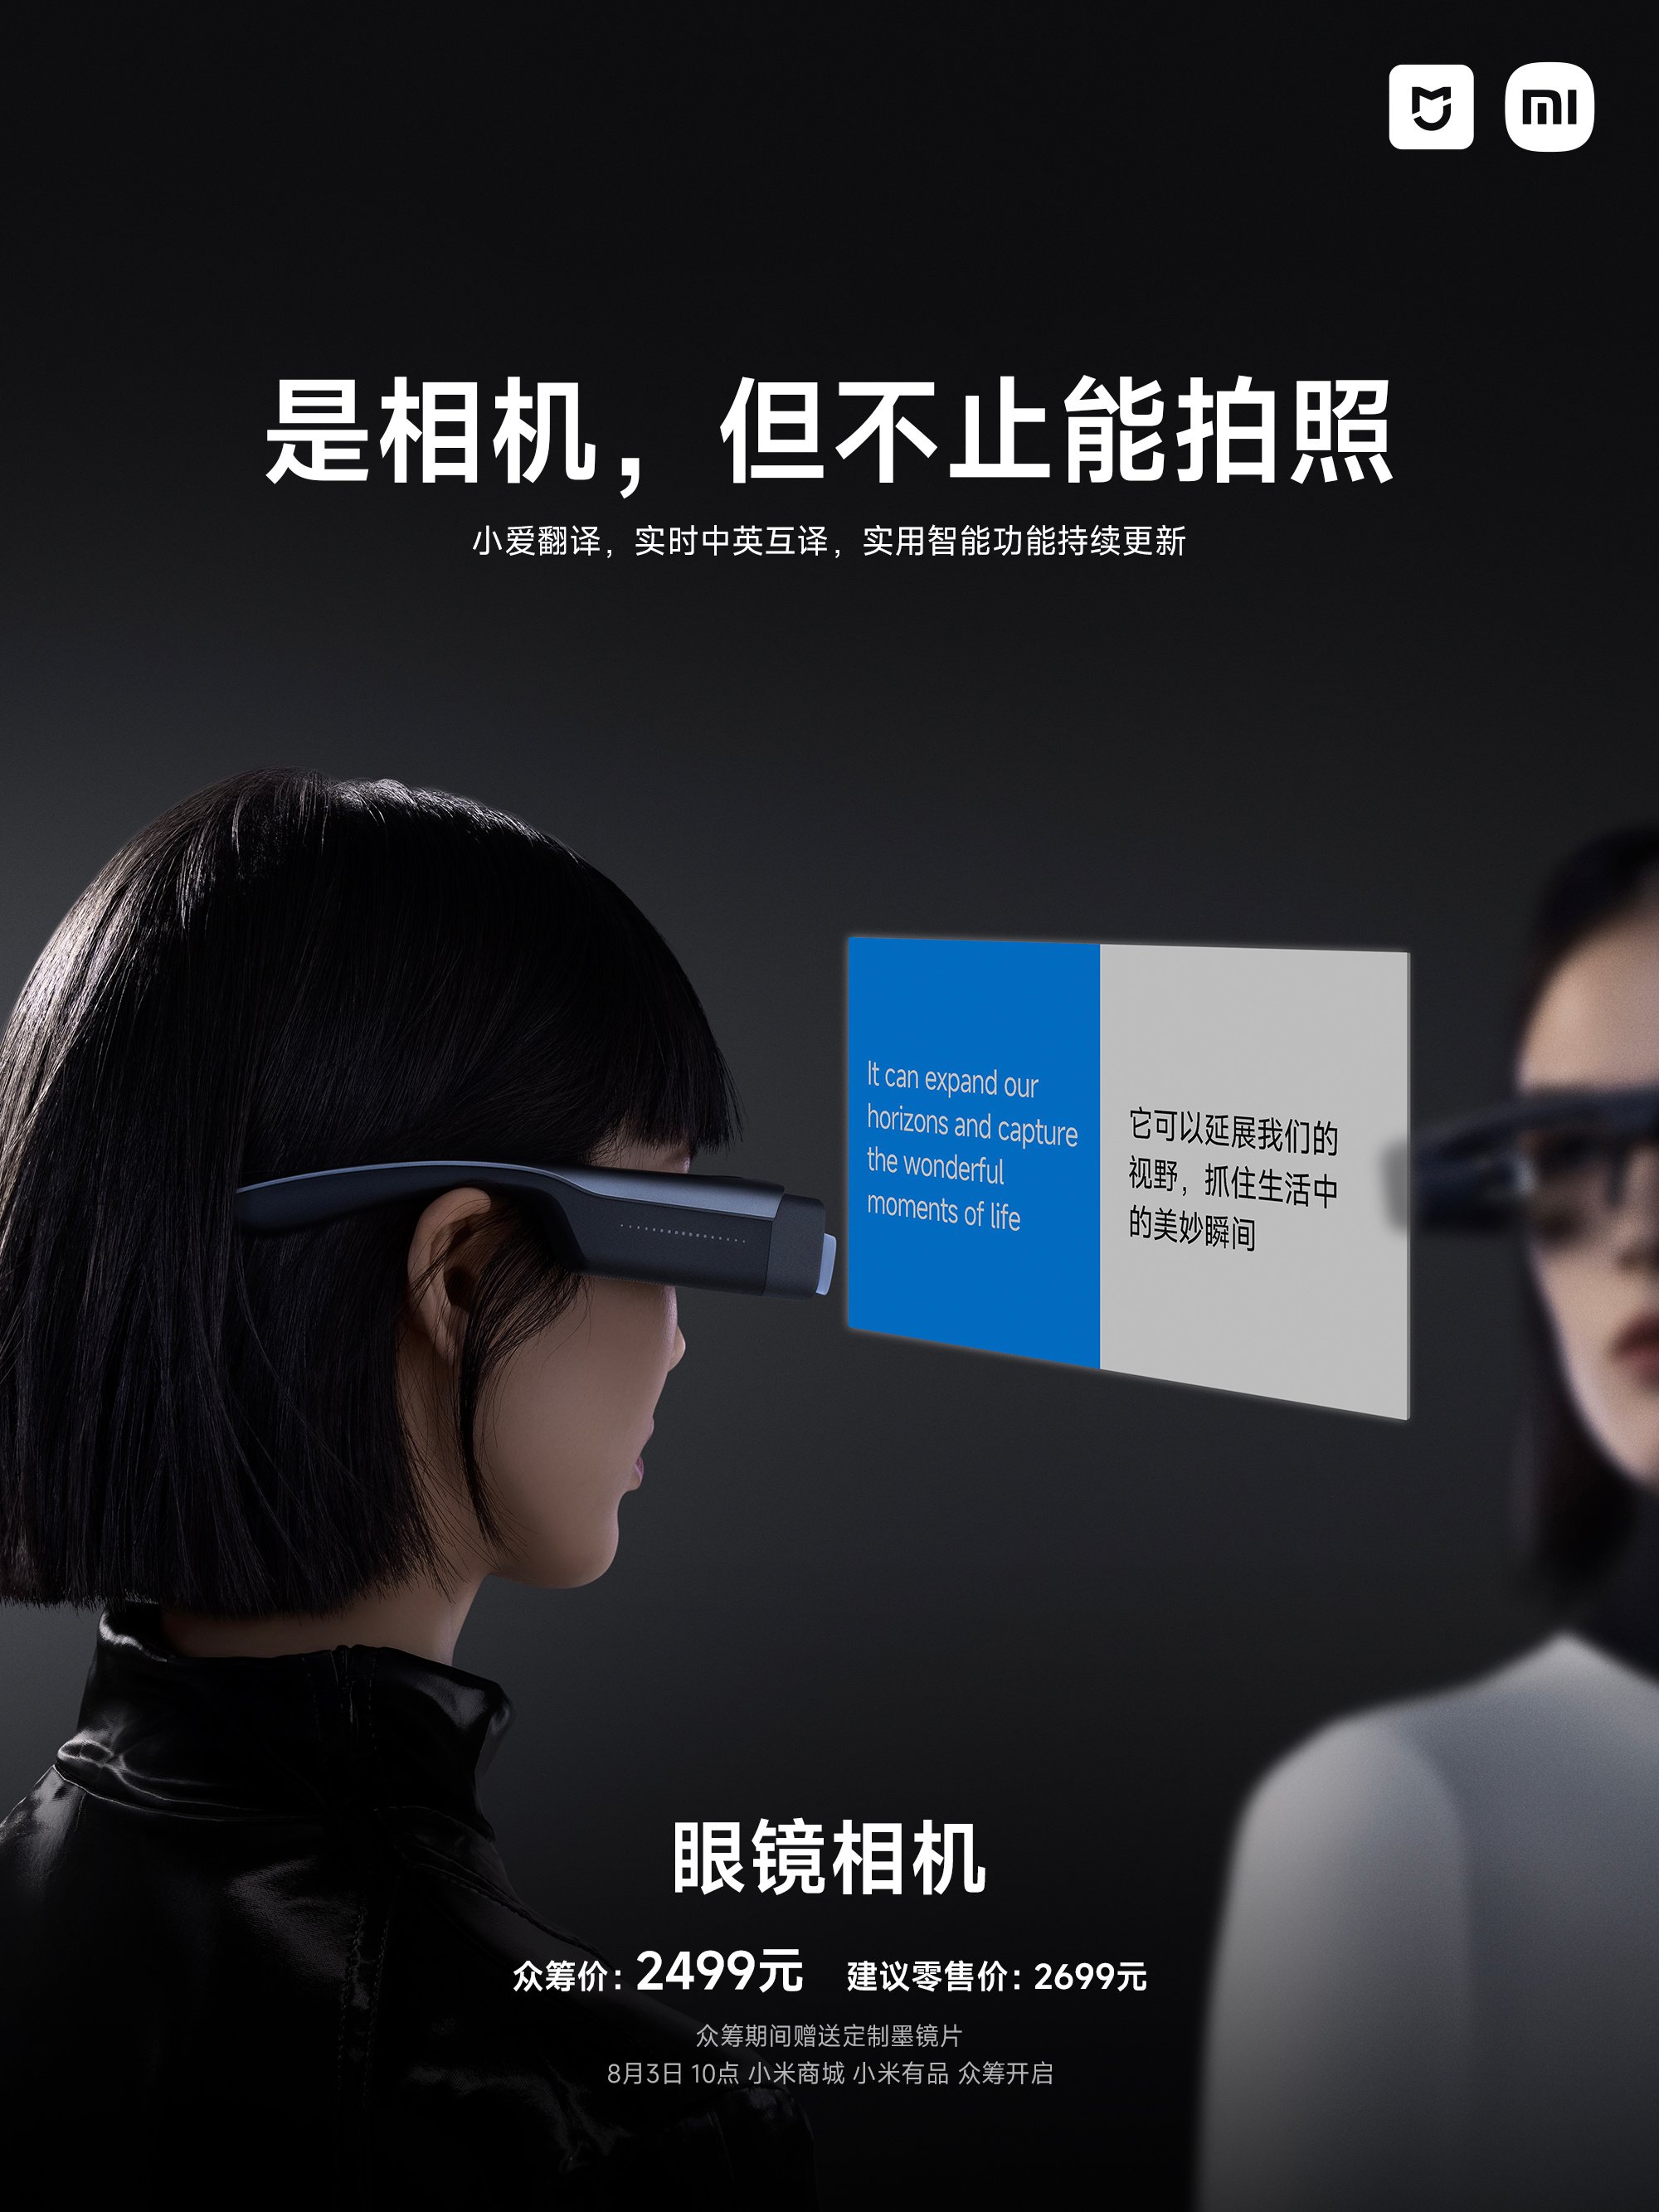 Pranala bentuk kacamata pintar Mijia. (Sumber gambar: Weibo/Xiaomi China)